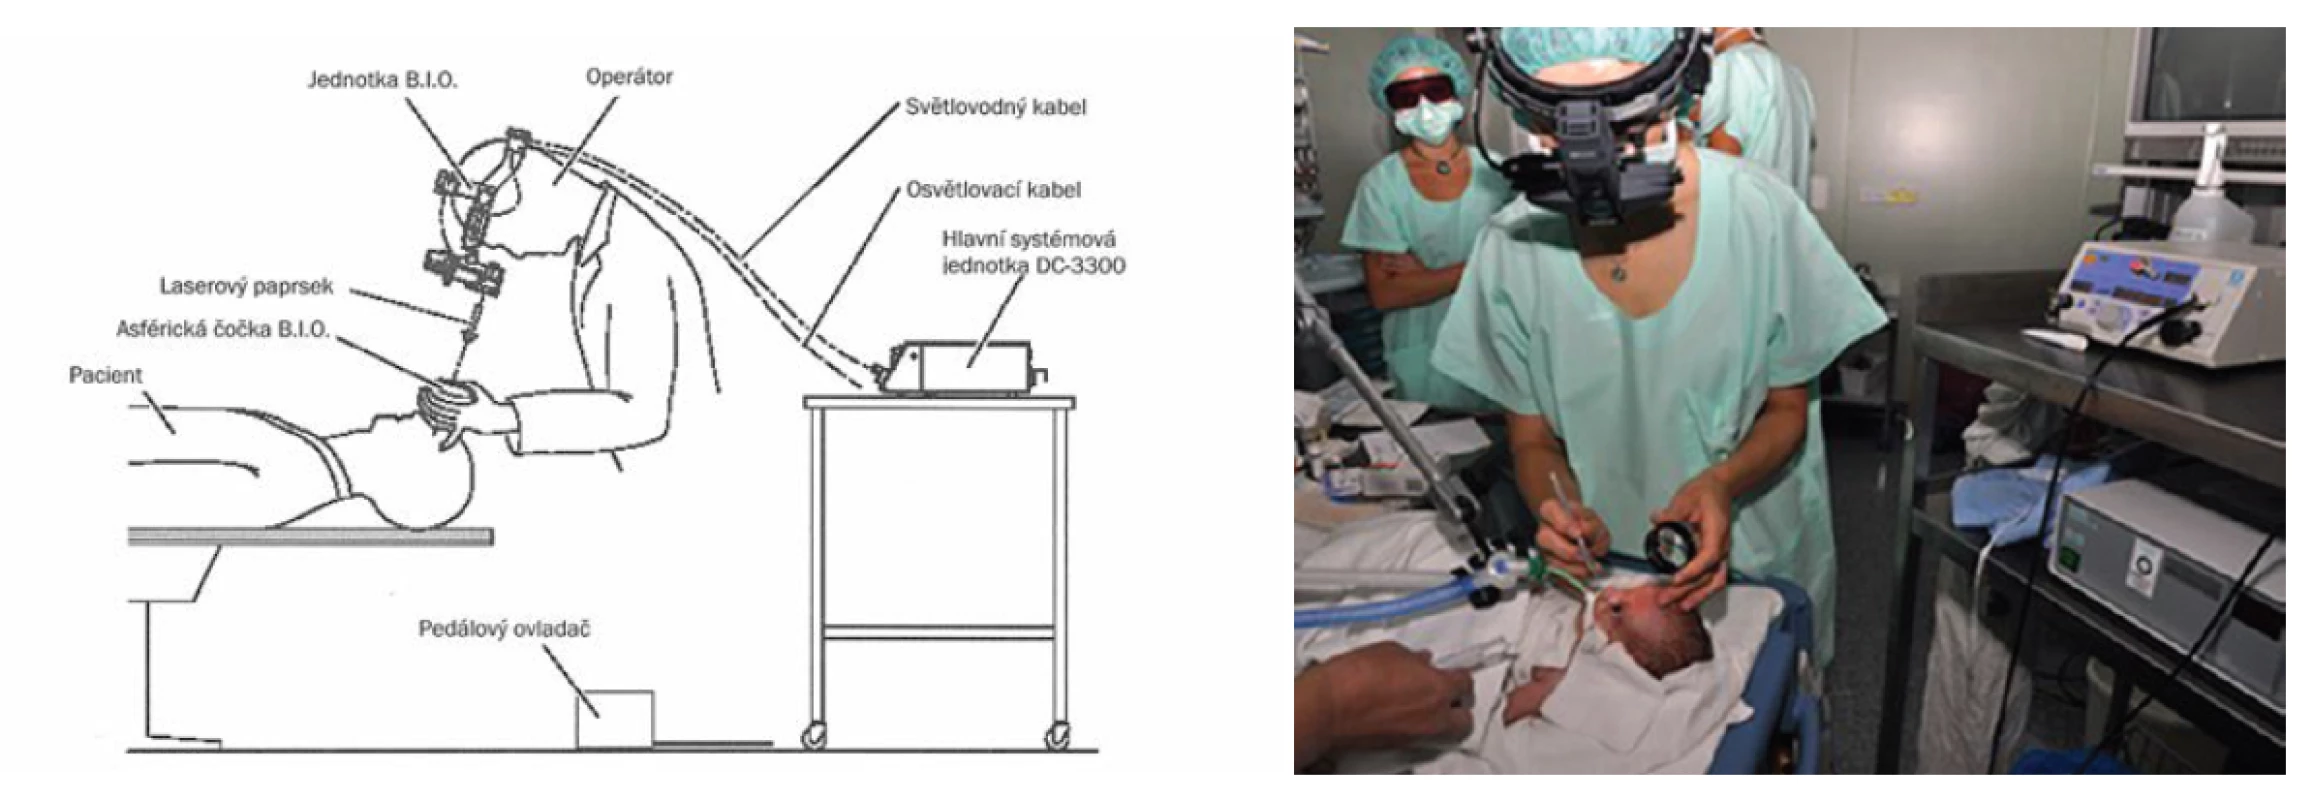 Transpupilární operace sítnice diodovým laserem s nepřímou oftalmoskopií